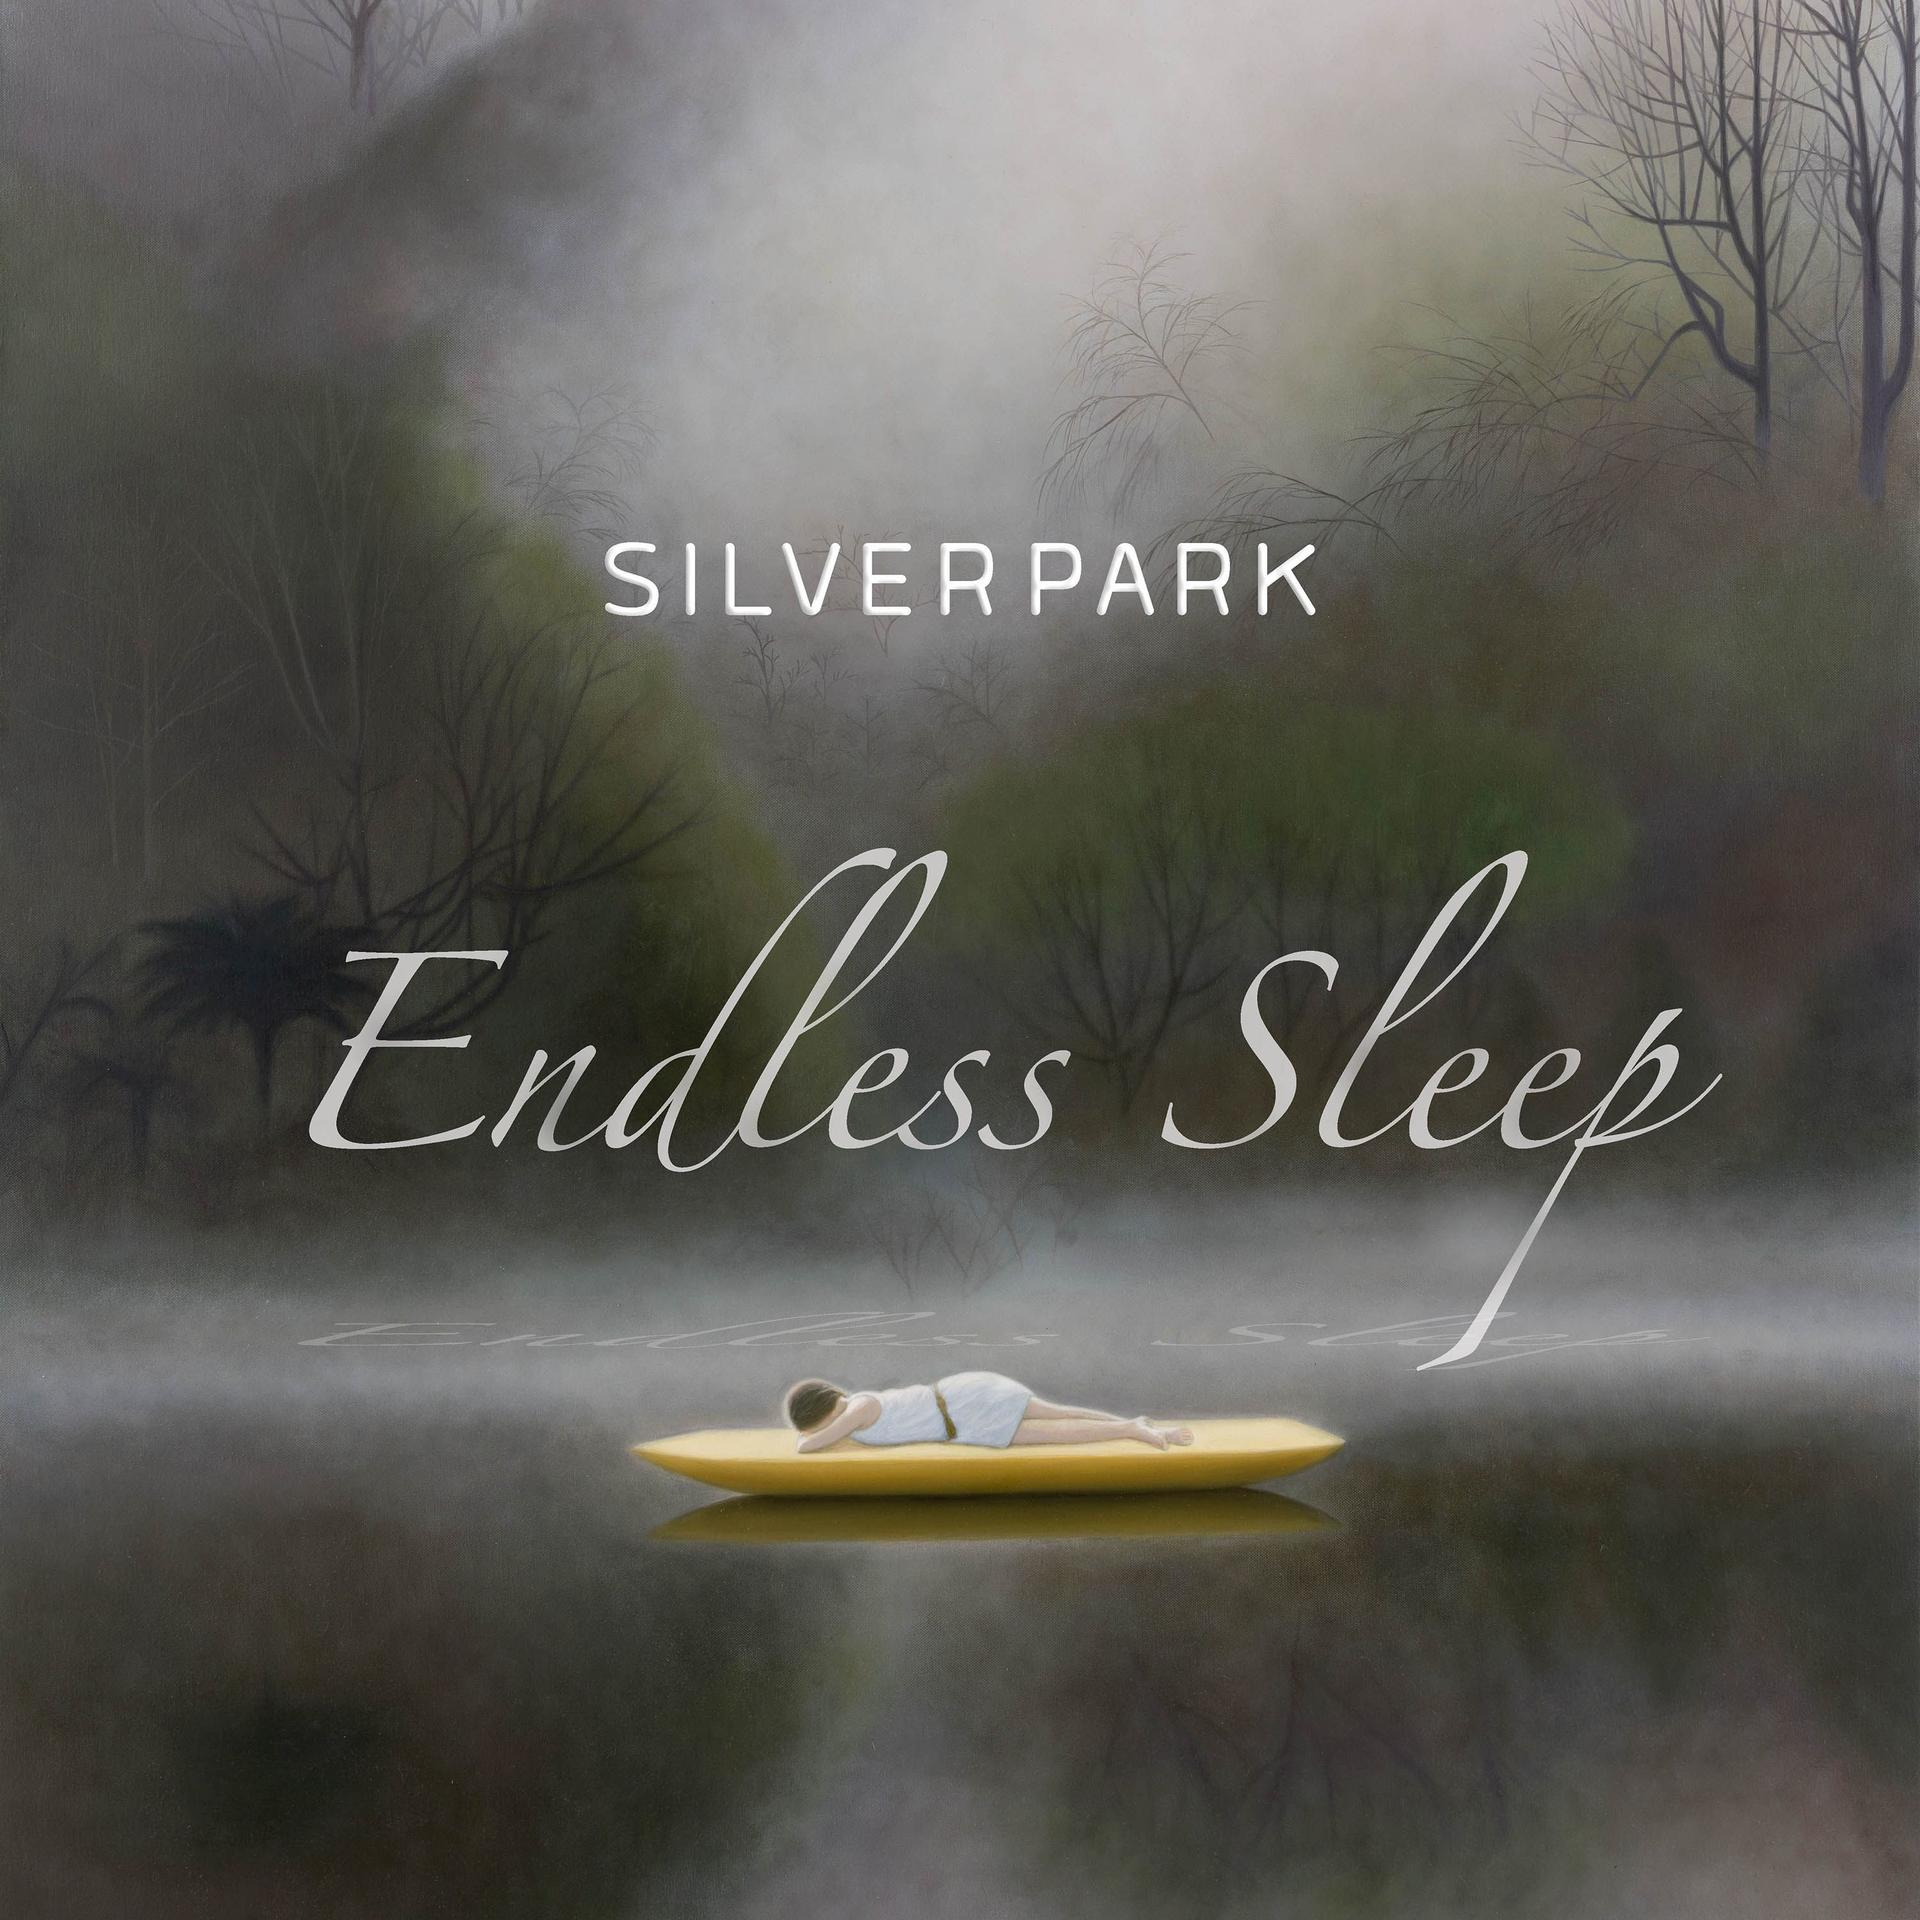 - Endless (Vinyl) Sleep - Silverpark